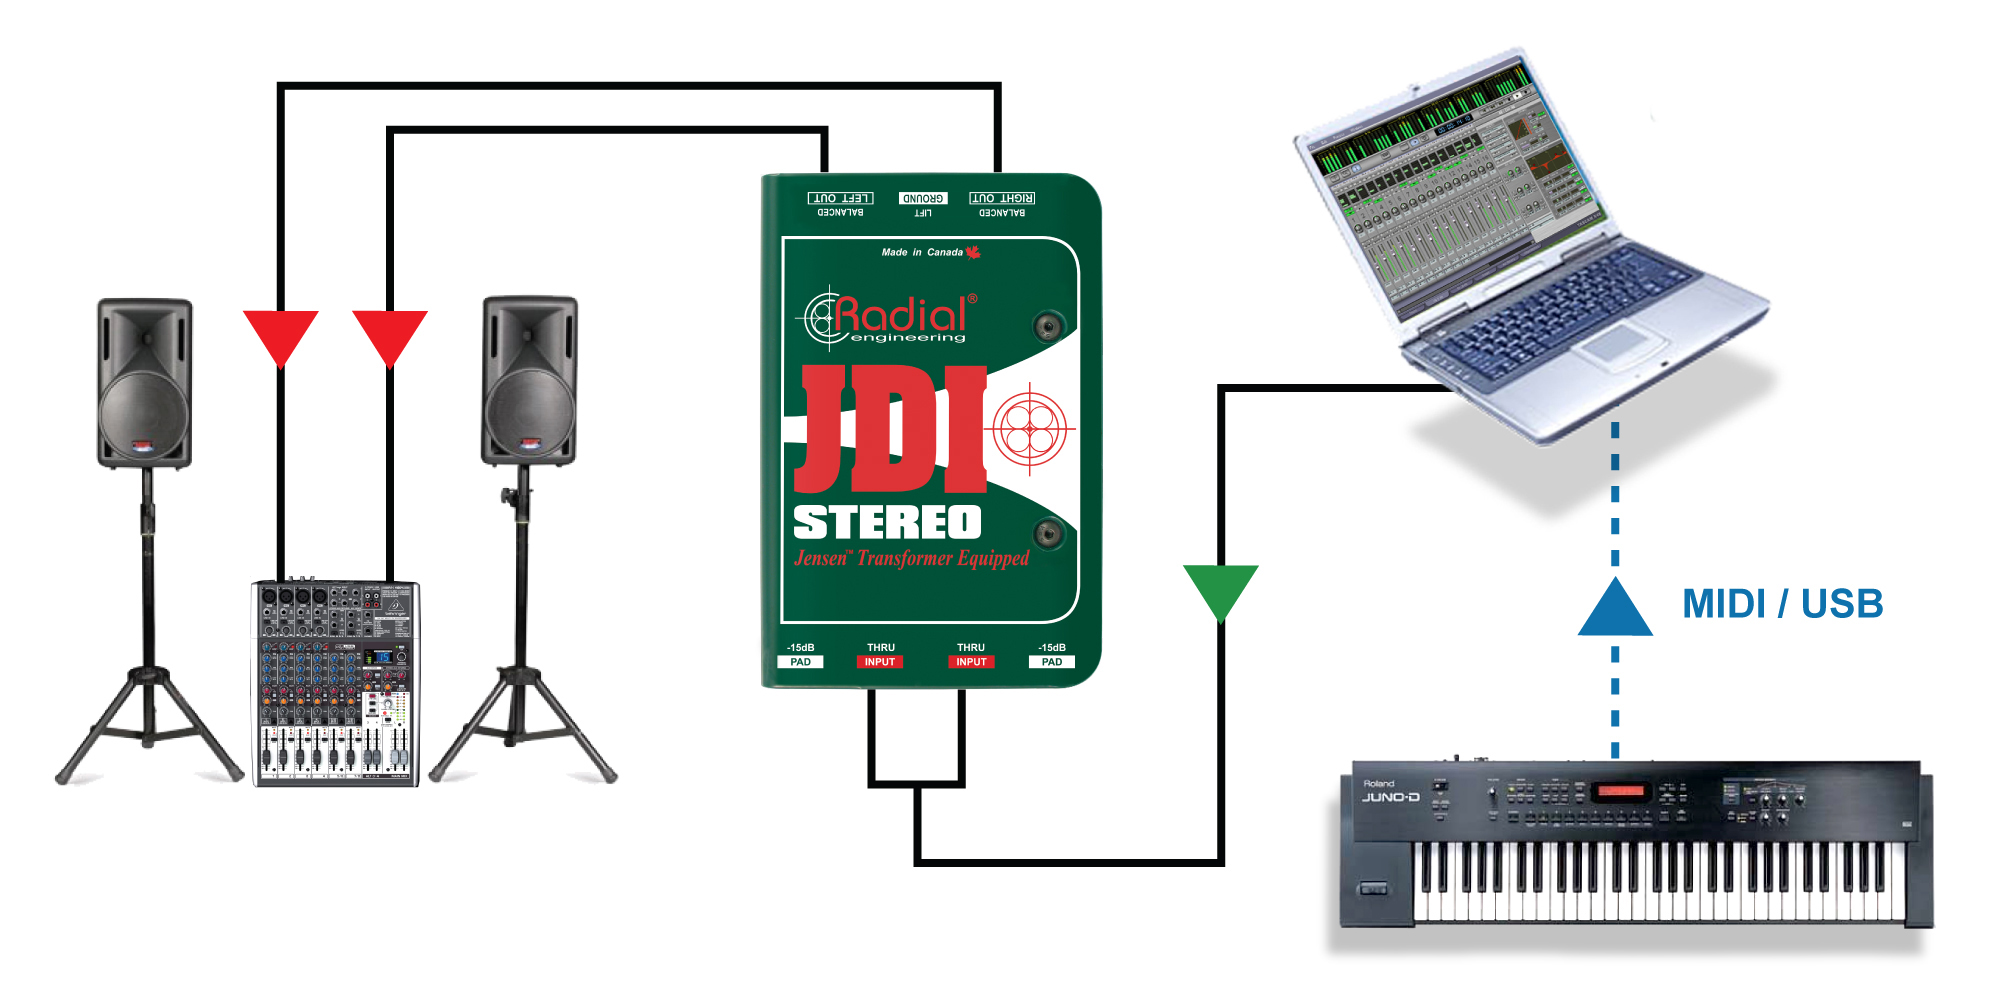 JDI Stereo è equipaggiata con trasformatori Jensen ed è in grado di gestire correttamente e senza problemi i transienti estremi provenienti da un pianoforte digitale, un laptop o un mixer DJ.